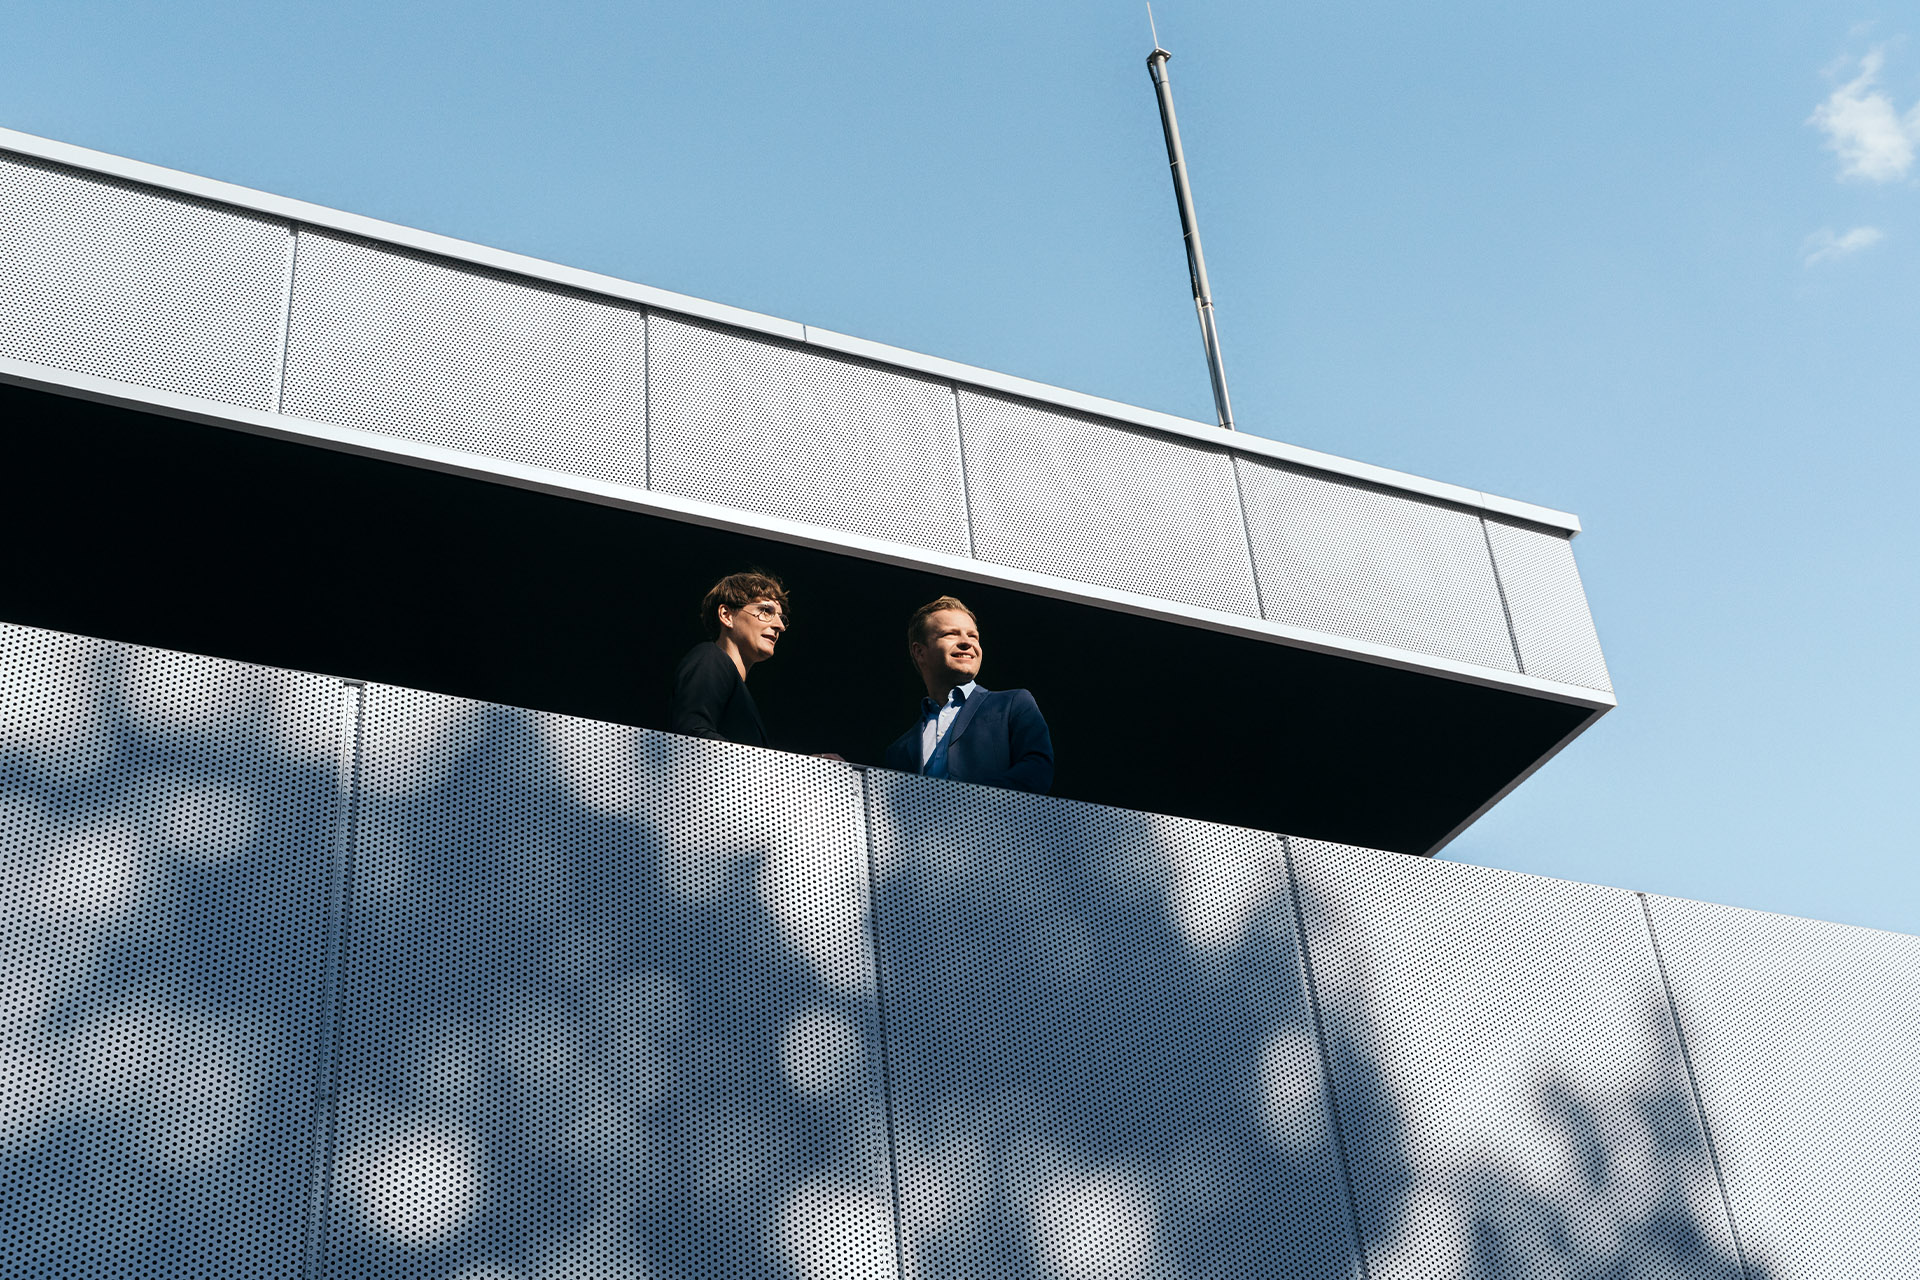 Gli esperti di sostenibilità Johanna Klewitz e Malte Vömel guardano dal balcone della lounge dell'hub di ricarica Audi.